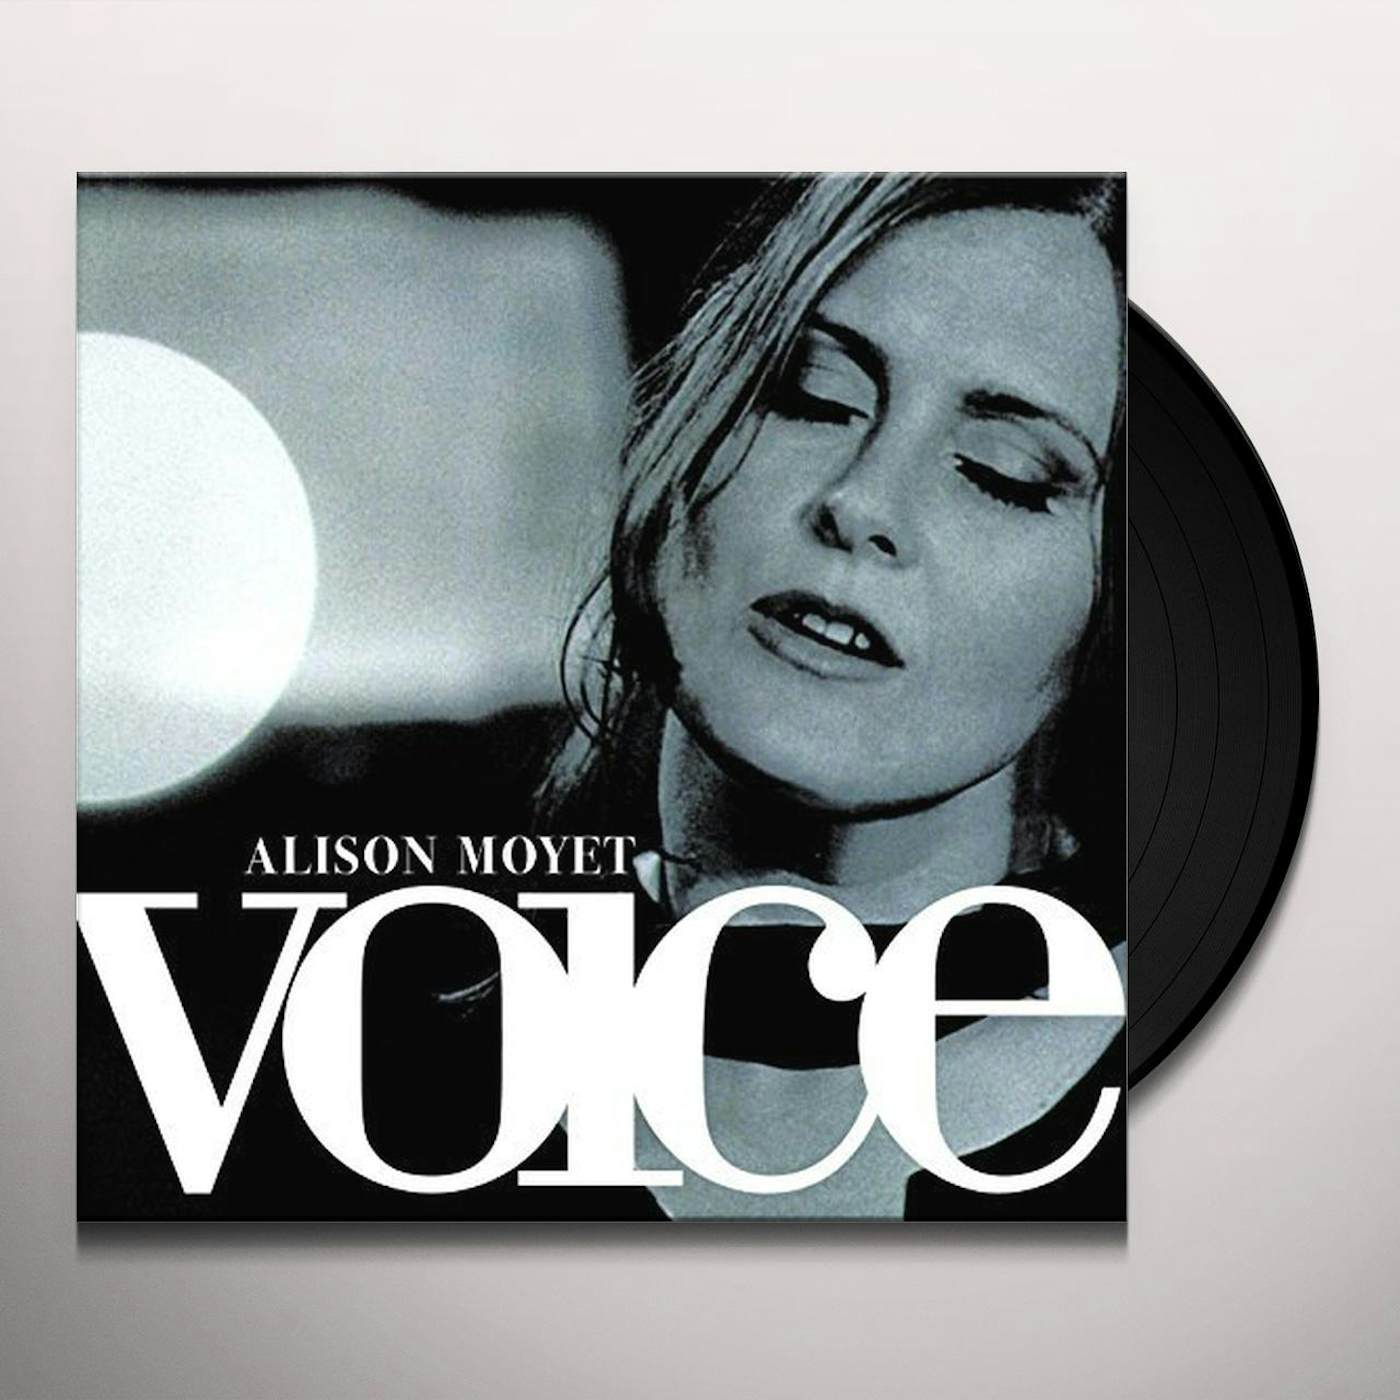 Alison Moyet Voice Vinyl Record